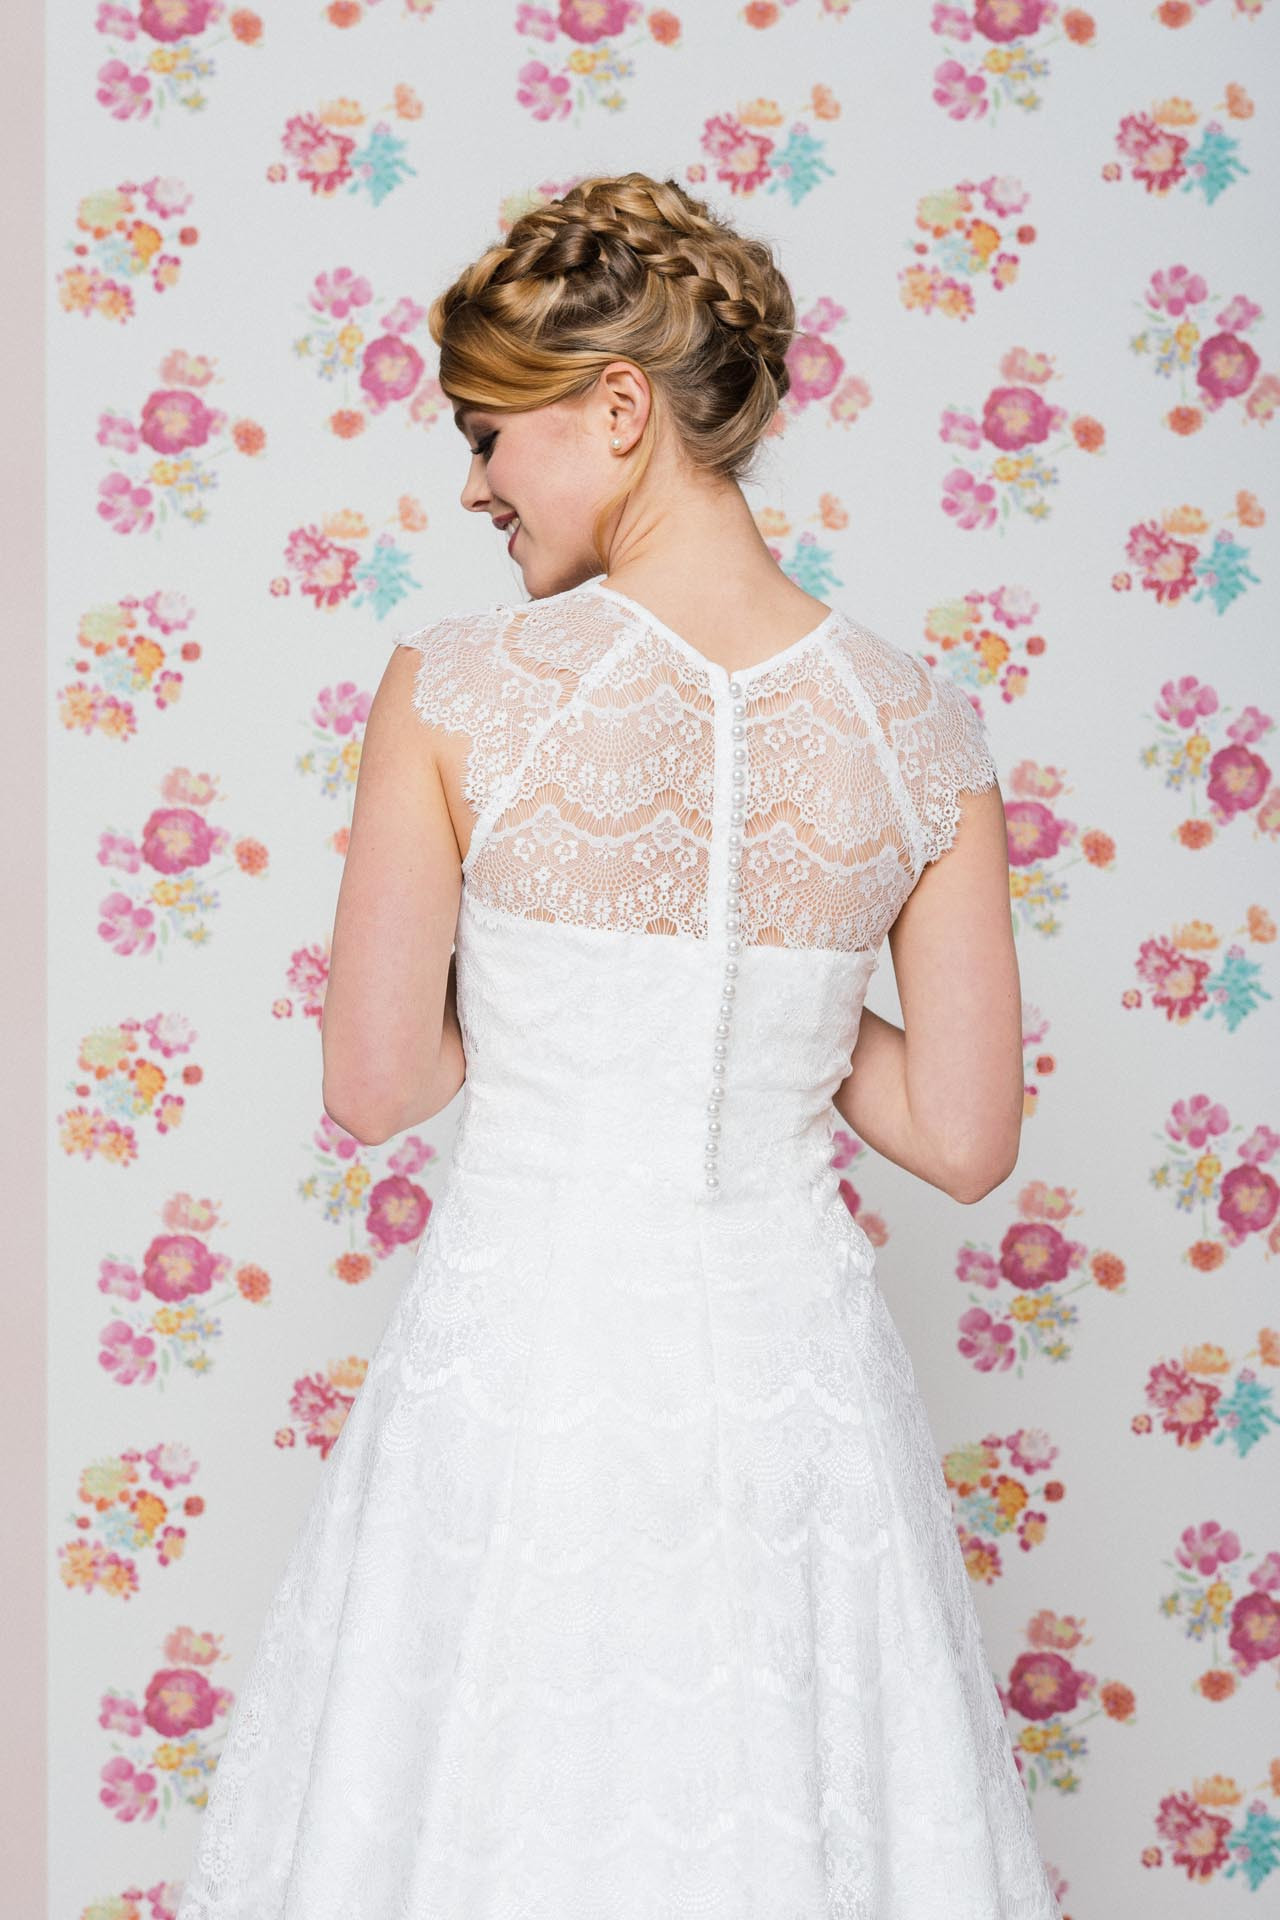 Petticoat Hochzeitskleid
 Brautkleid Petticoat kurzes Spitzenkleid im 50er Jahre Stil